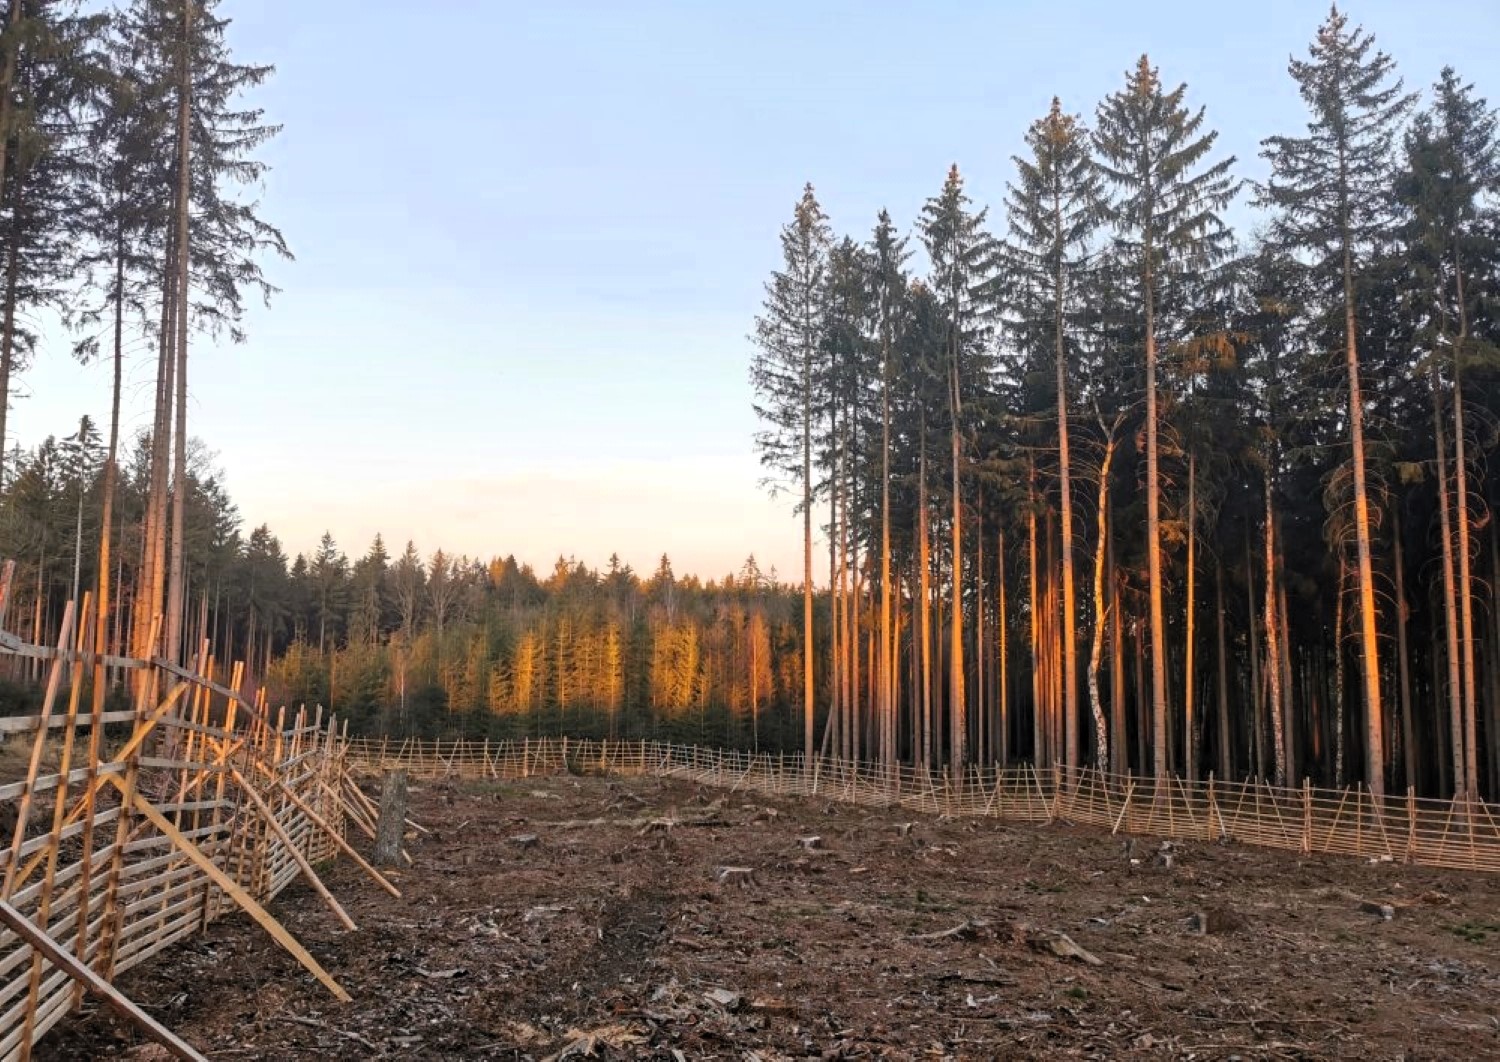 Kůrovcová kalamita u VLS loni skončila, podnik srazil kalamitní základ v lesích na 4 procenta